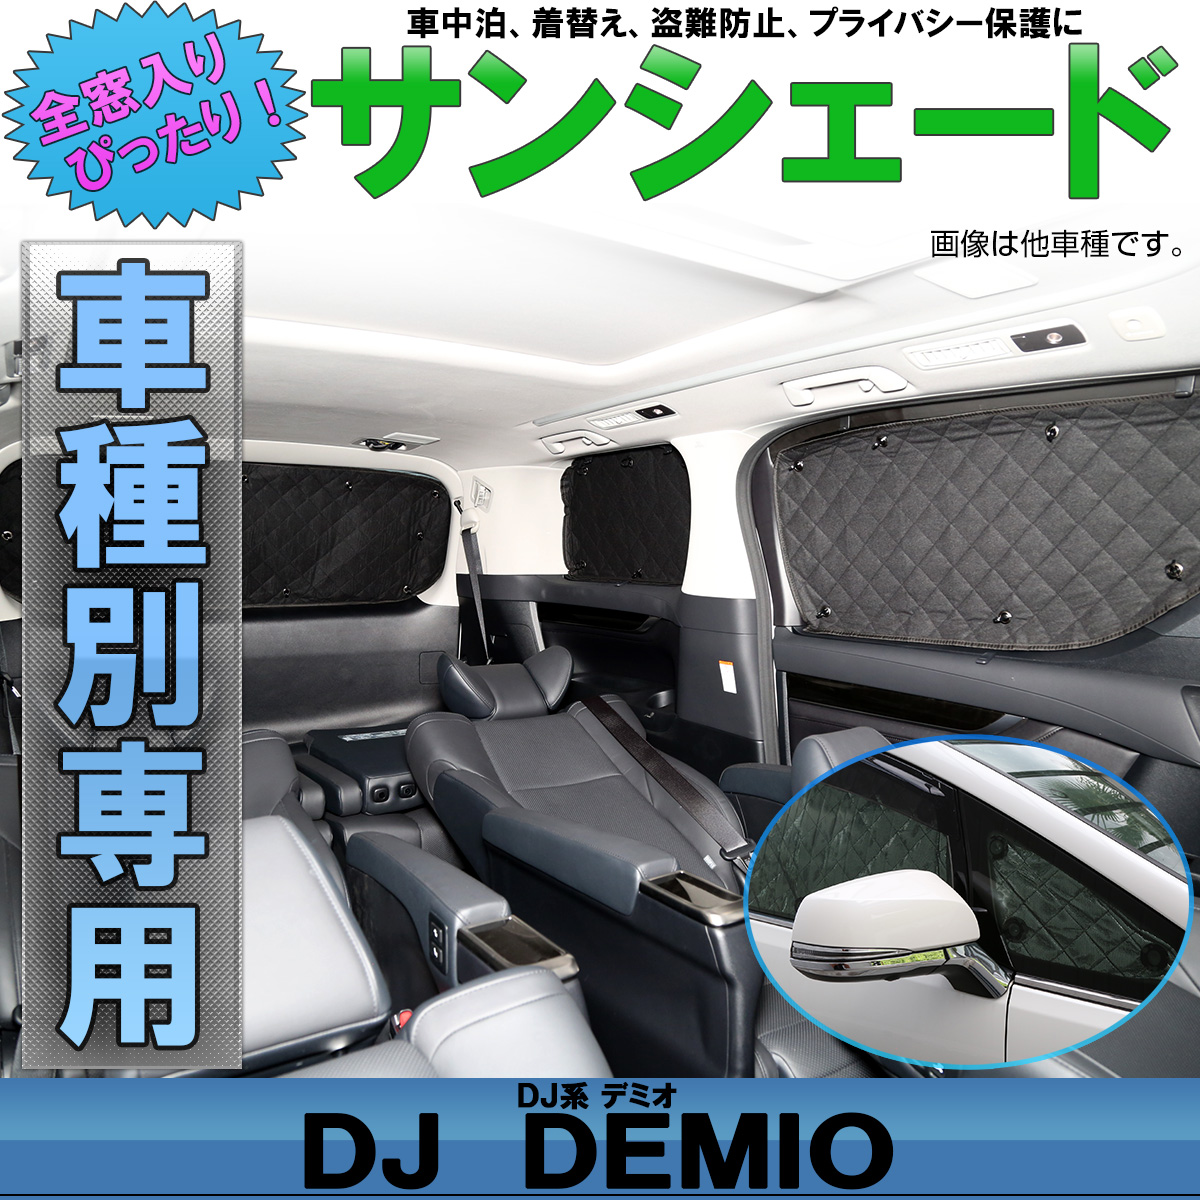 DJ系 デミオ サンシェード DJ3 DJ5 DEMIO 専用設計 全窓用セット 5層構造 ブラックメッシュ 車中泊 プライバシー保護に S-828